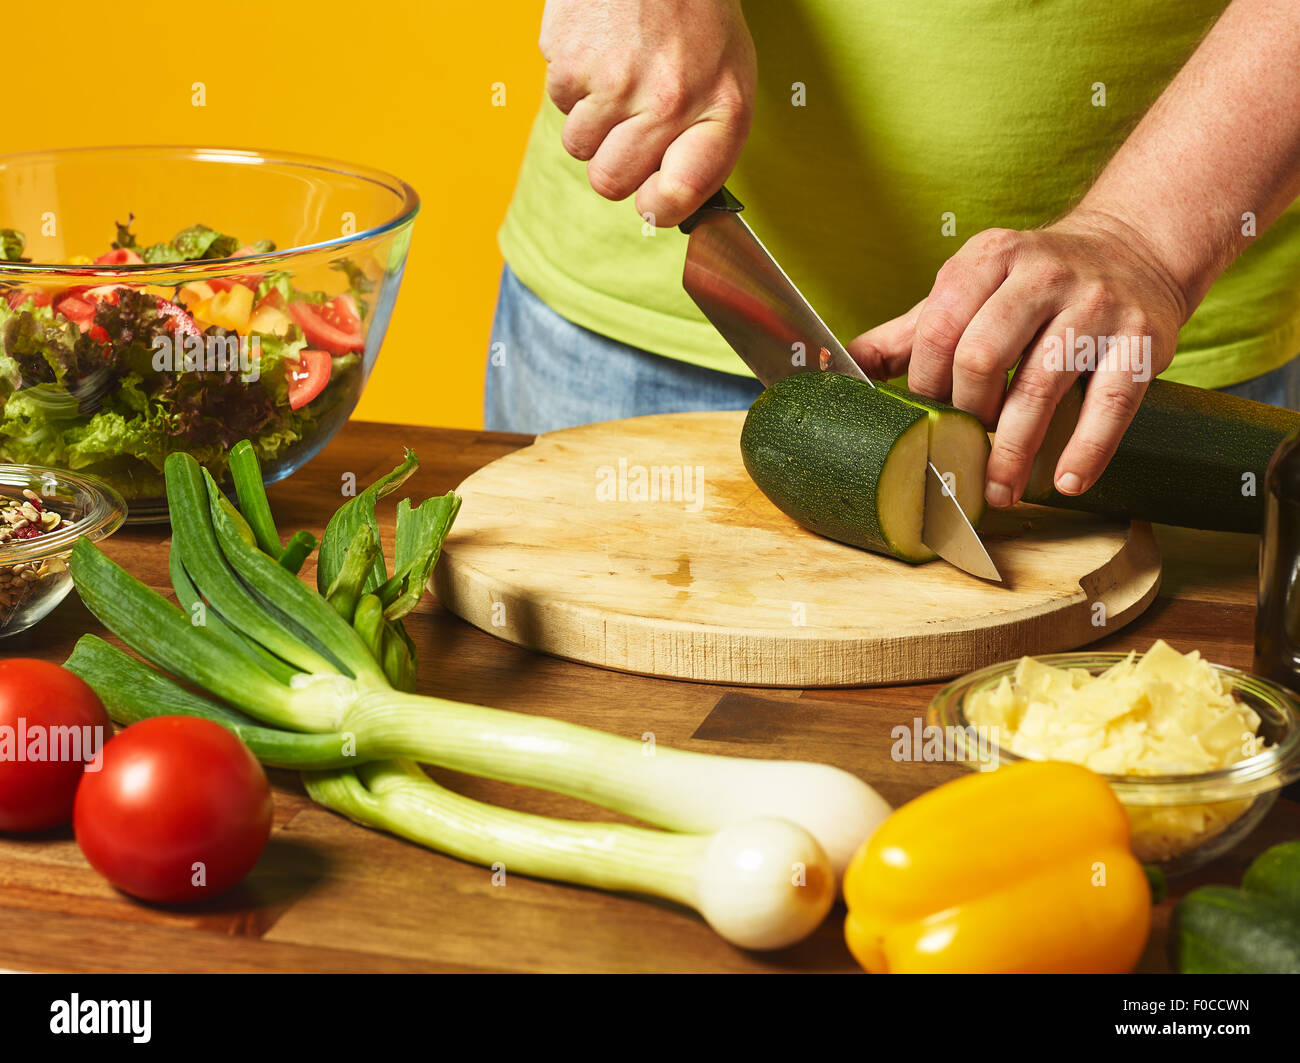 Insalata fresca ingredienti sul tavolo, uomo di mezza età taglia le zucchine - sfondo giallo Foto Stock